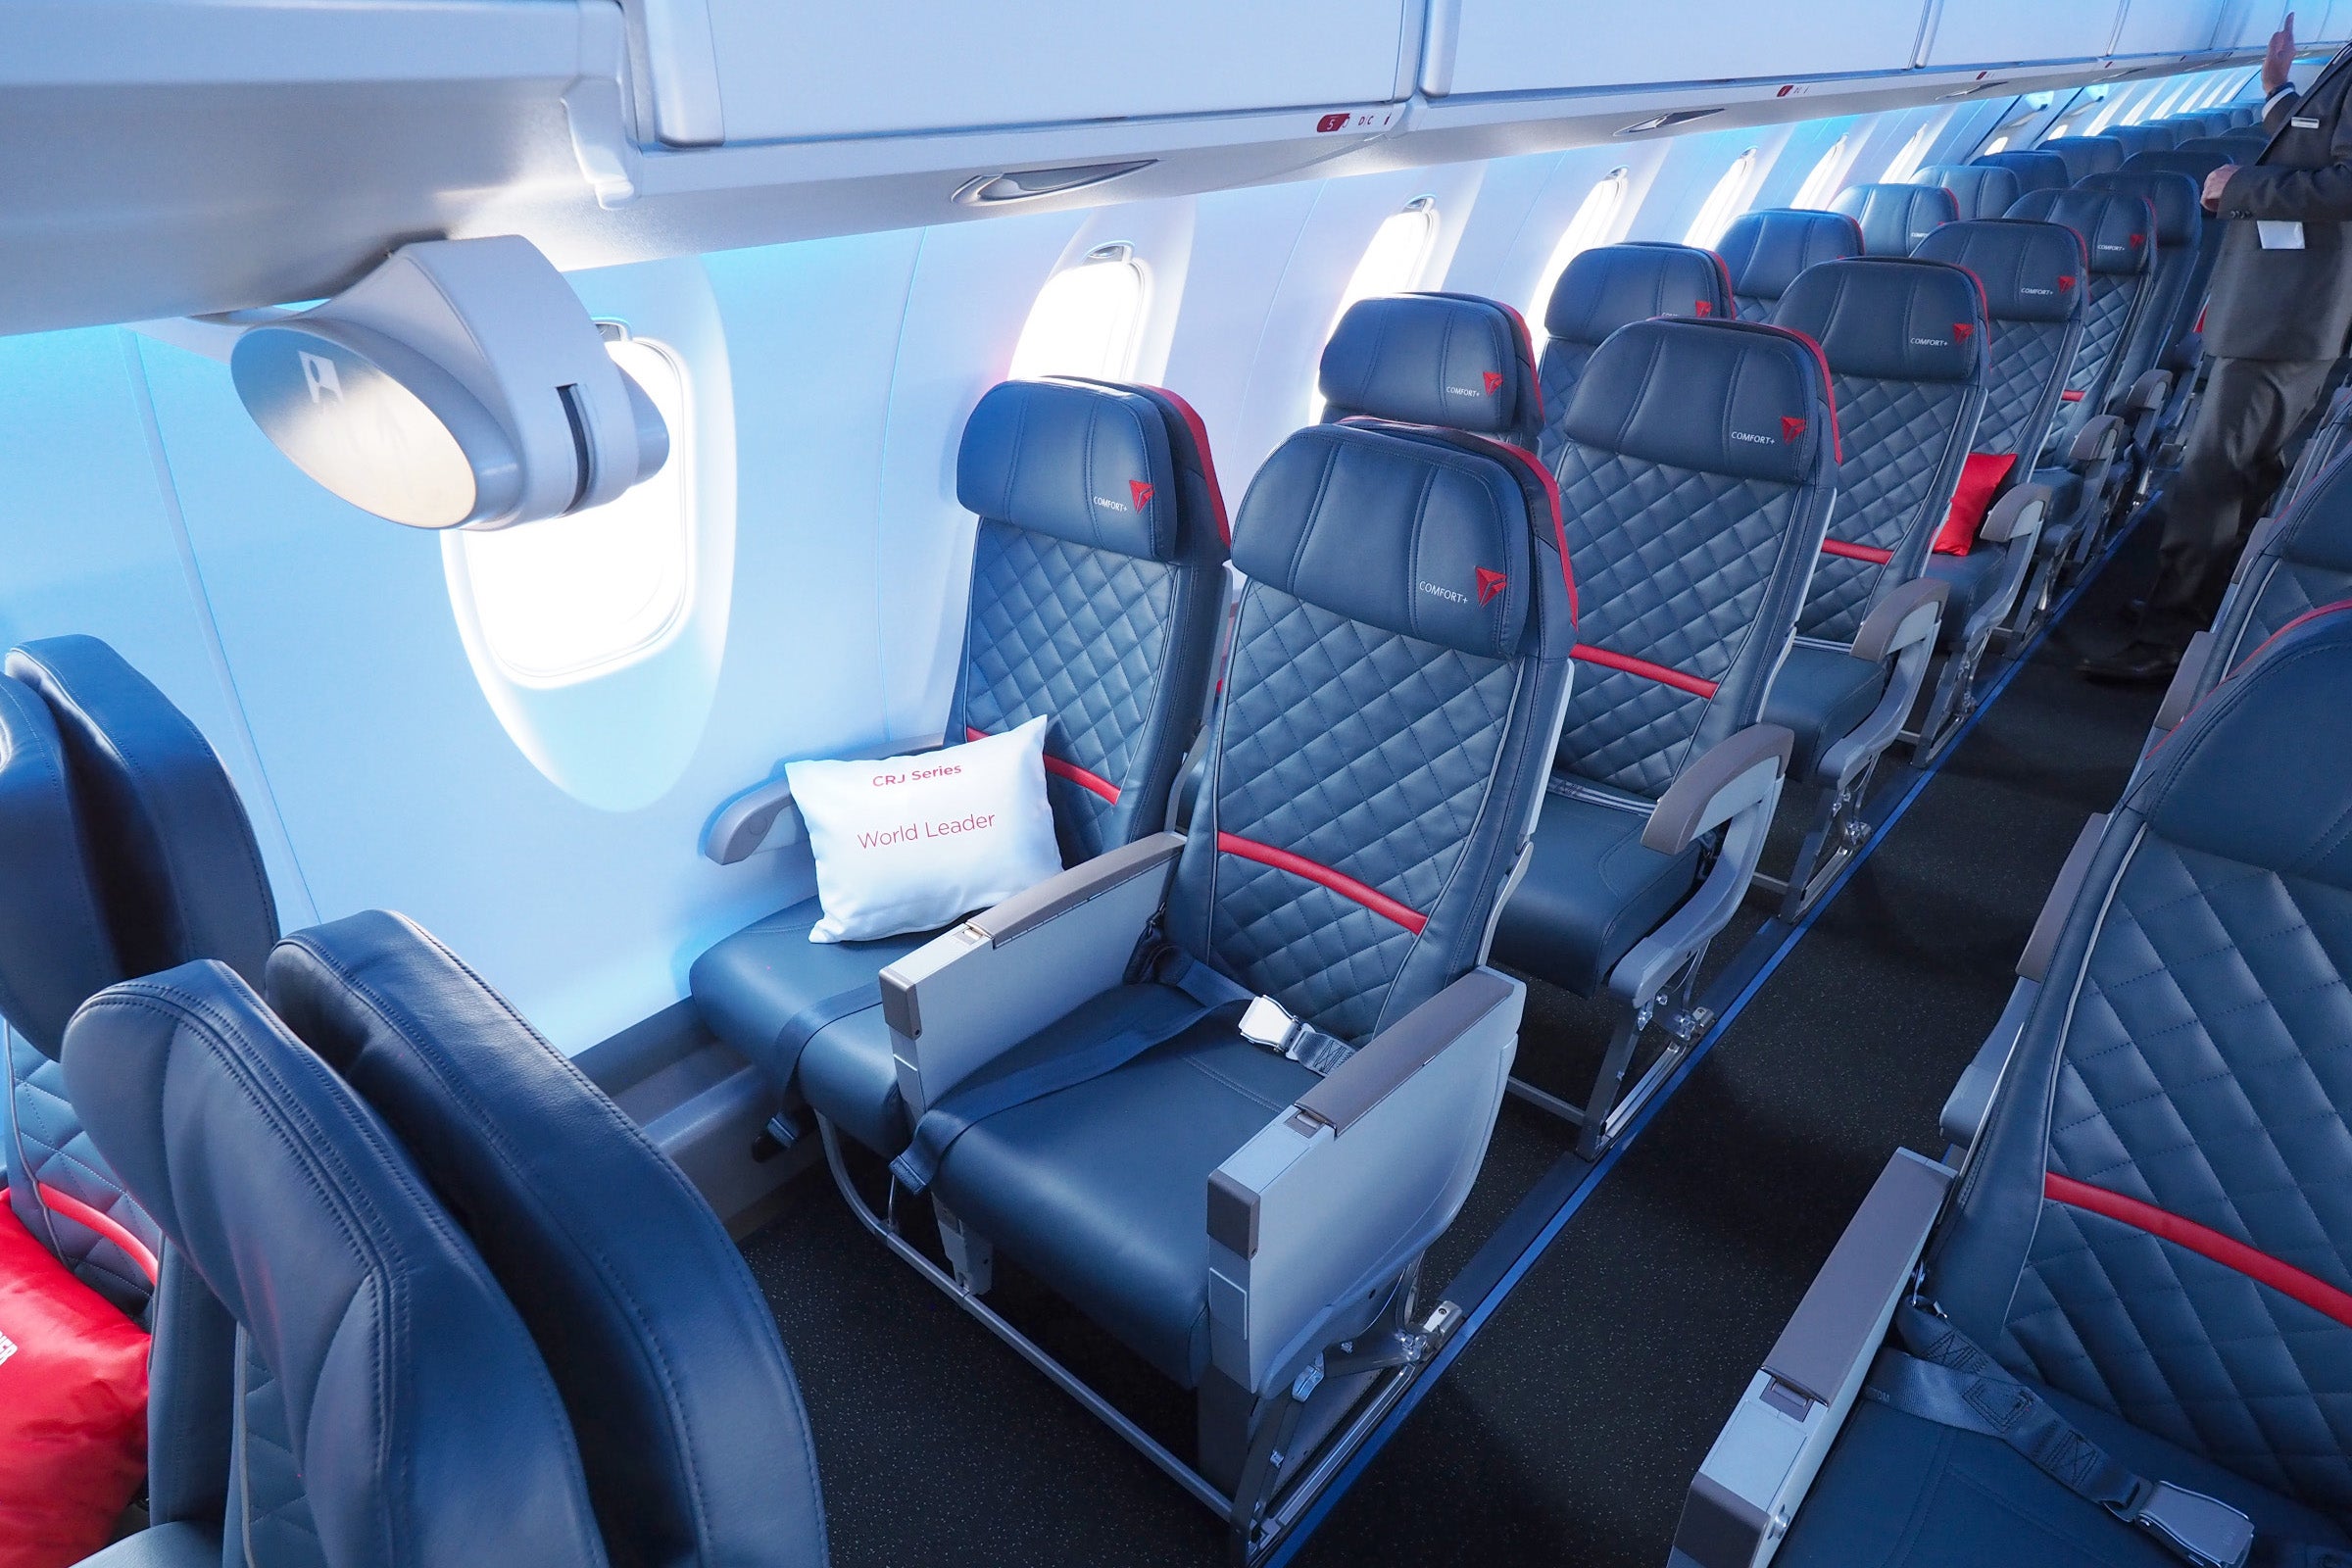 Delta CRJ900 Atmosphere Tour